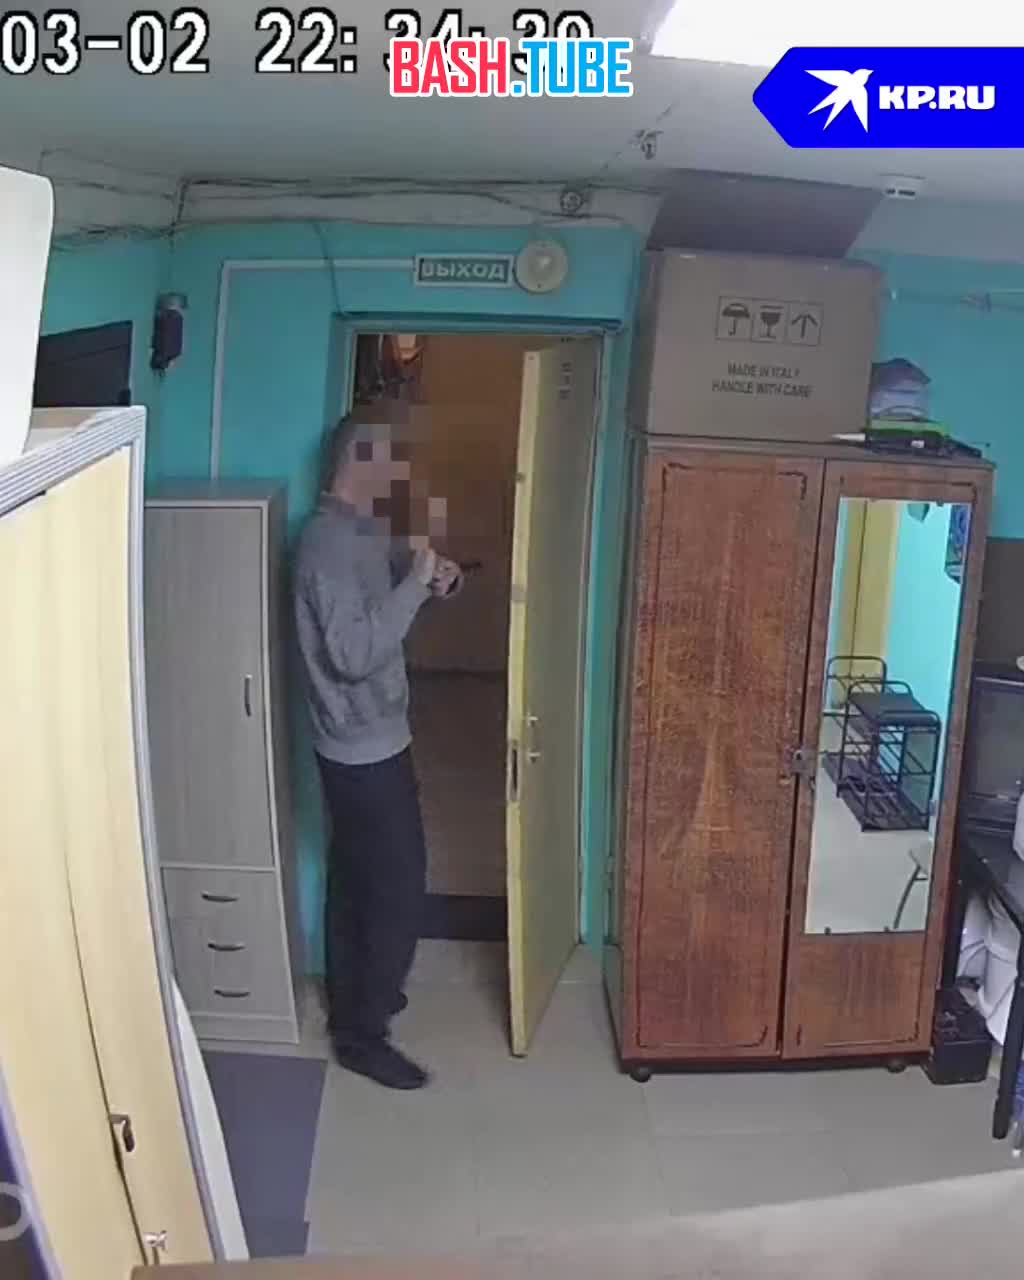  В Новосибирске семья судится с соседом по общежитию из-за хлопанья дверью